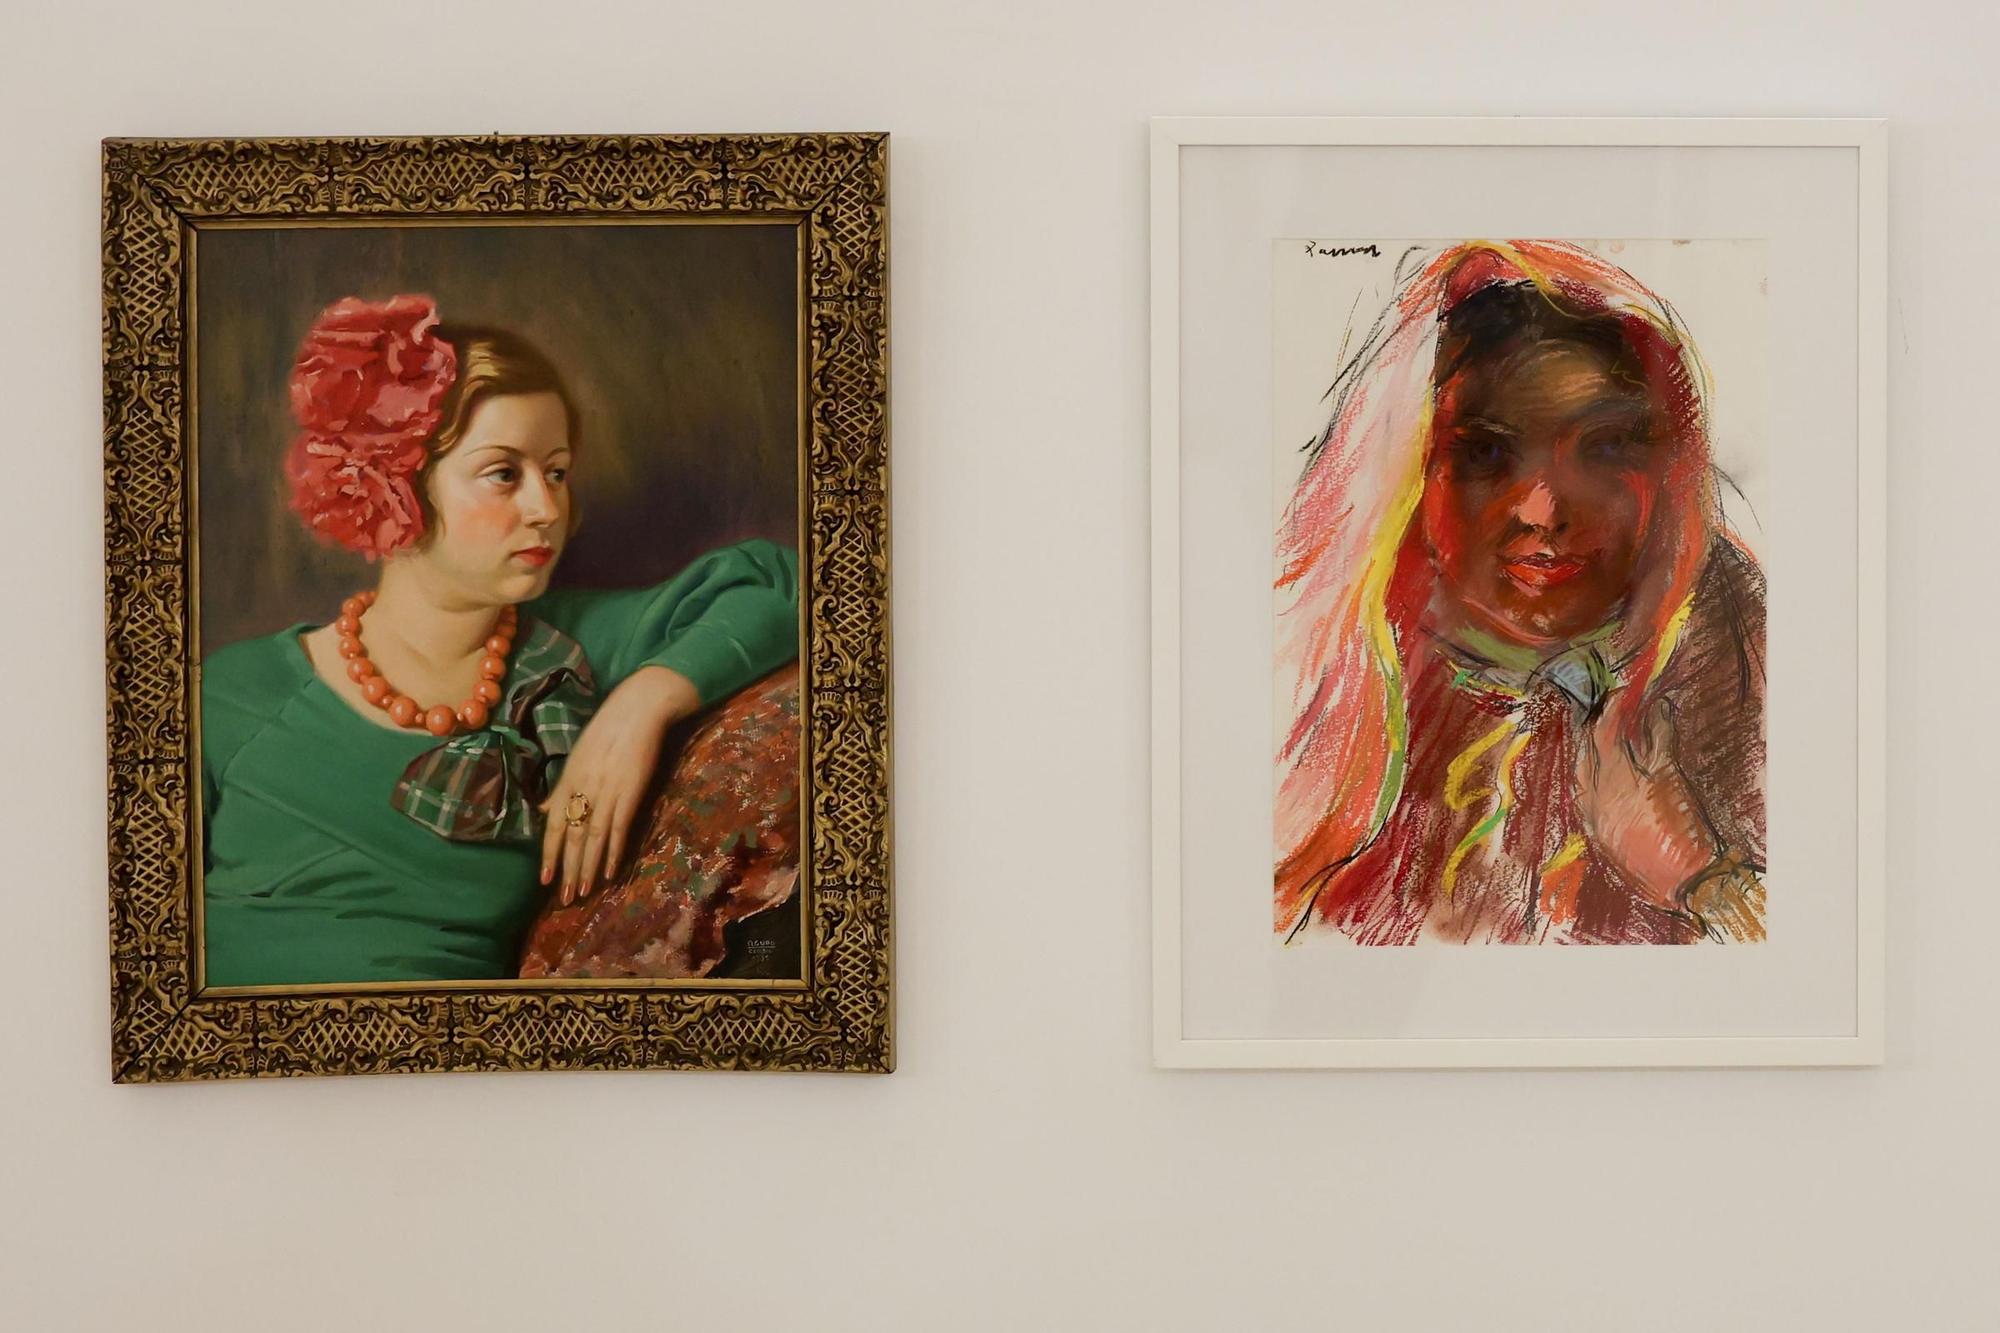 Galería: La mujer a ojos de los artistas de Ibiza del siglo XIX y XX